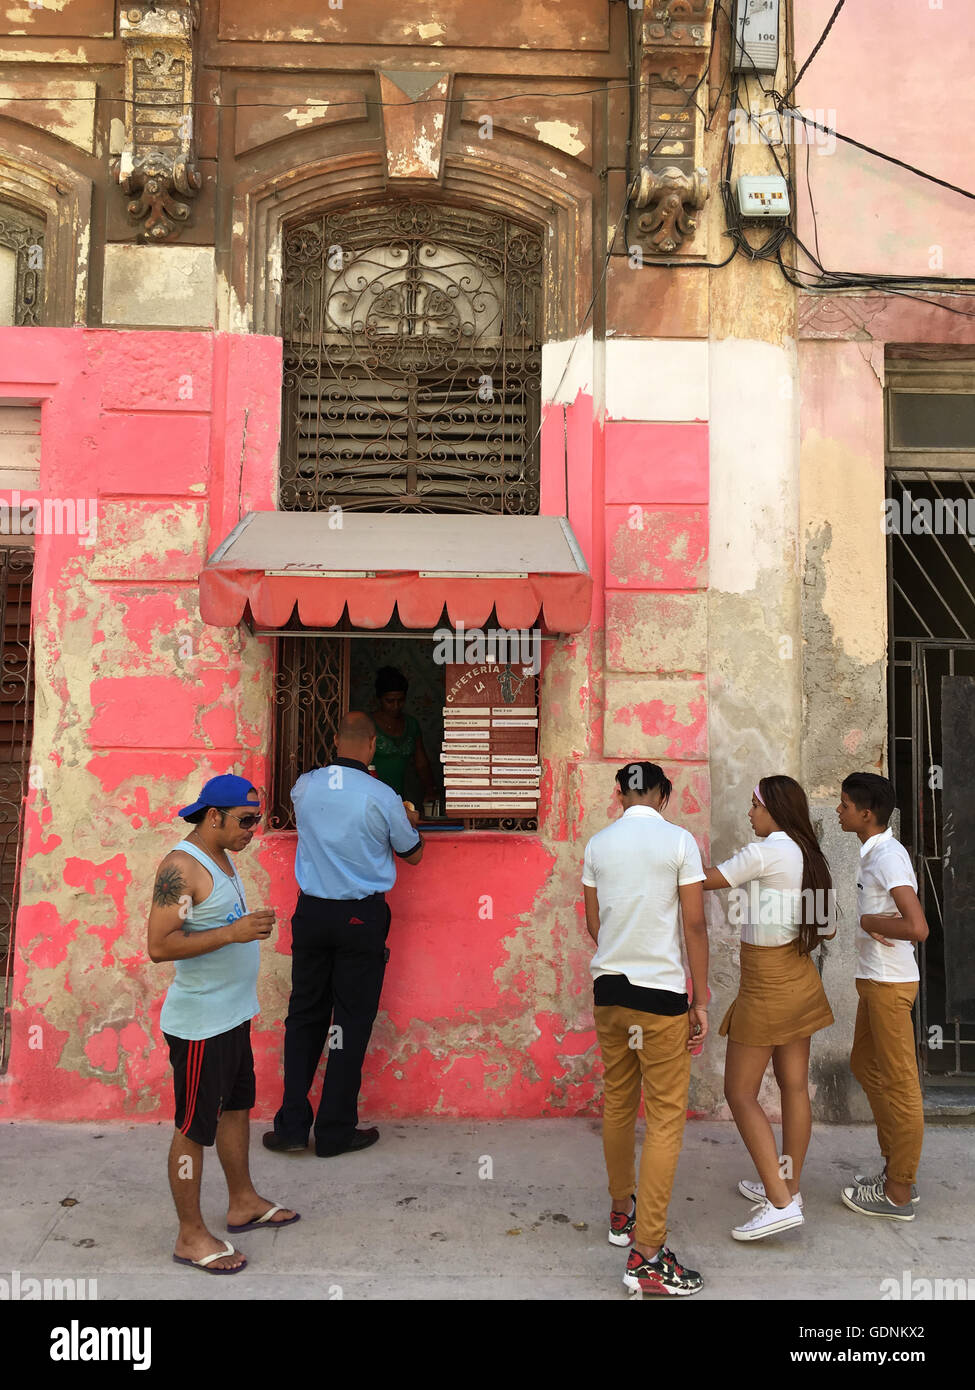 Auch Schülerinnen und Schüler in Uniform versammeln sich durch einen Lebensmittel-Kiosk in Havanna Kuba Stockfoto